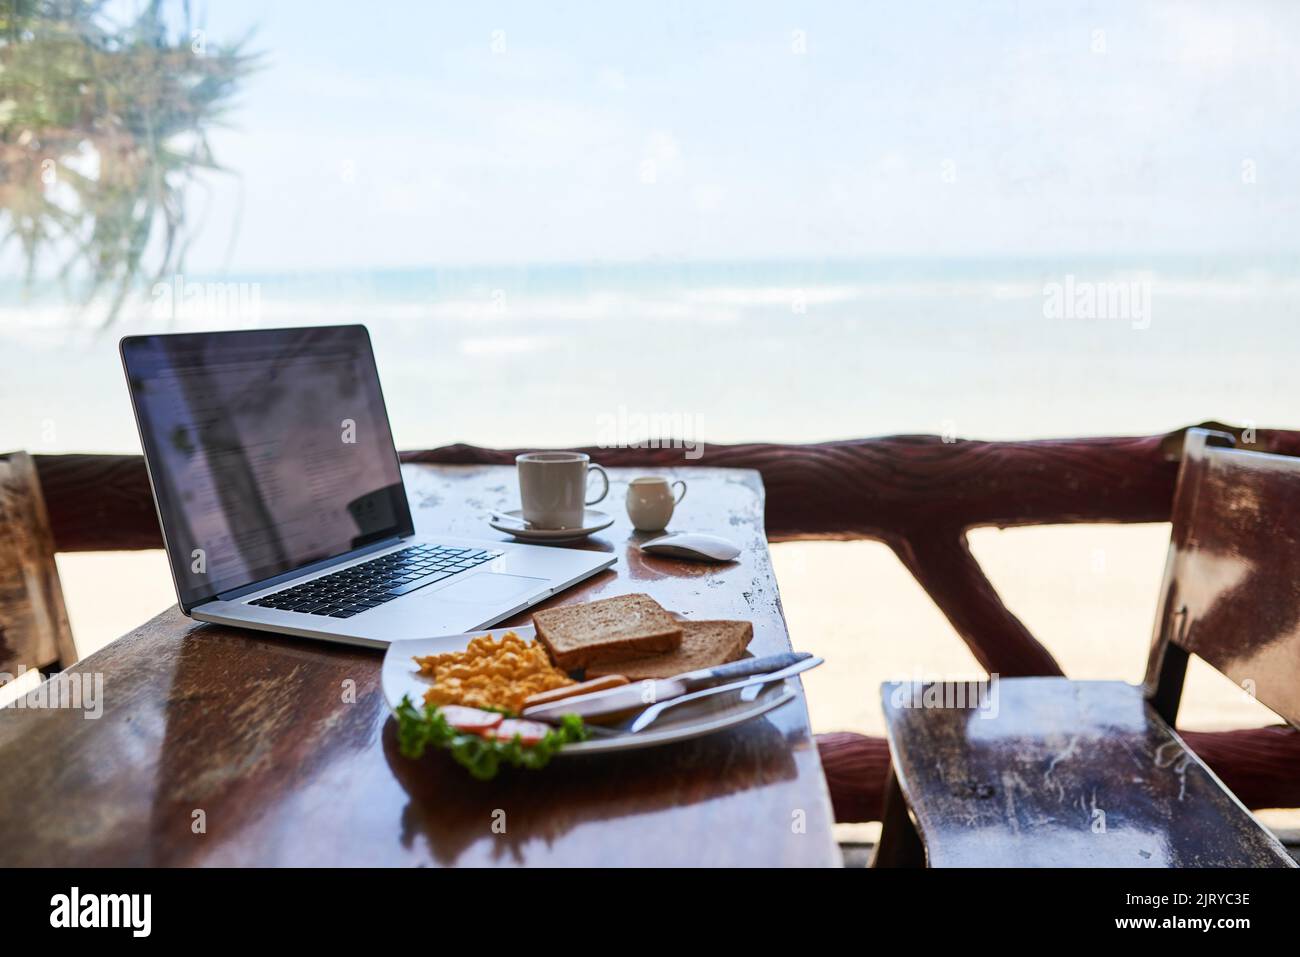 Petit déjeuner avec la meilleure vue. Un ordinateur portable et un petit déjeuner fraîchement préparé sur une table avec vue sur la plage en arrière-plan. Banque D'Images